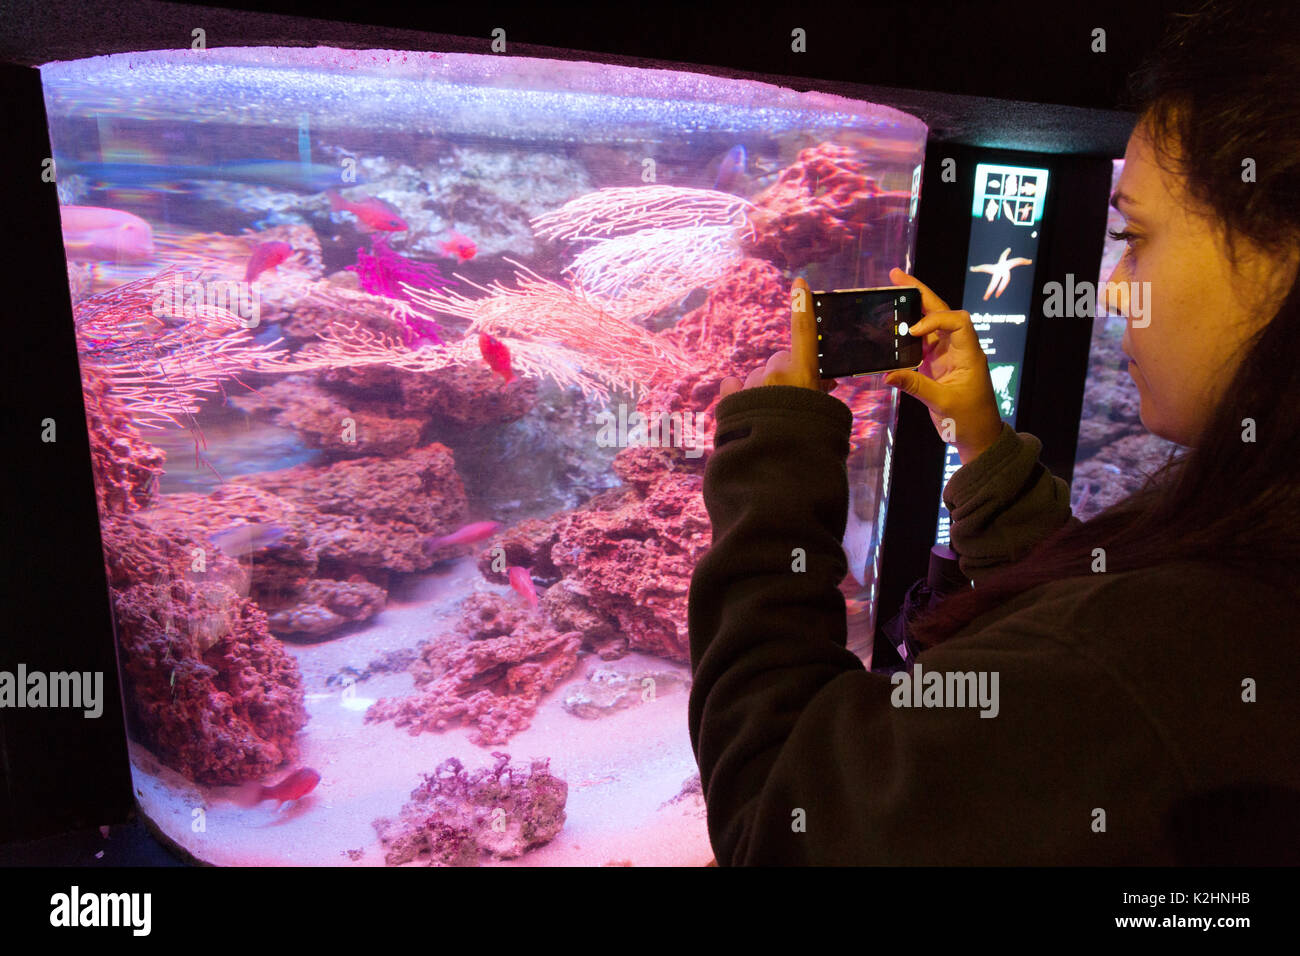 Une femme prend une photo de poissons dans le Grand Aquarium Saint Malo ( St Malo Aquarium ), St Malo, Bretagne France Banque D'Images